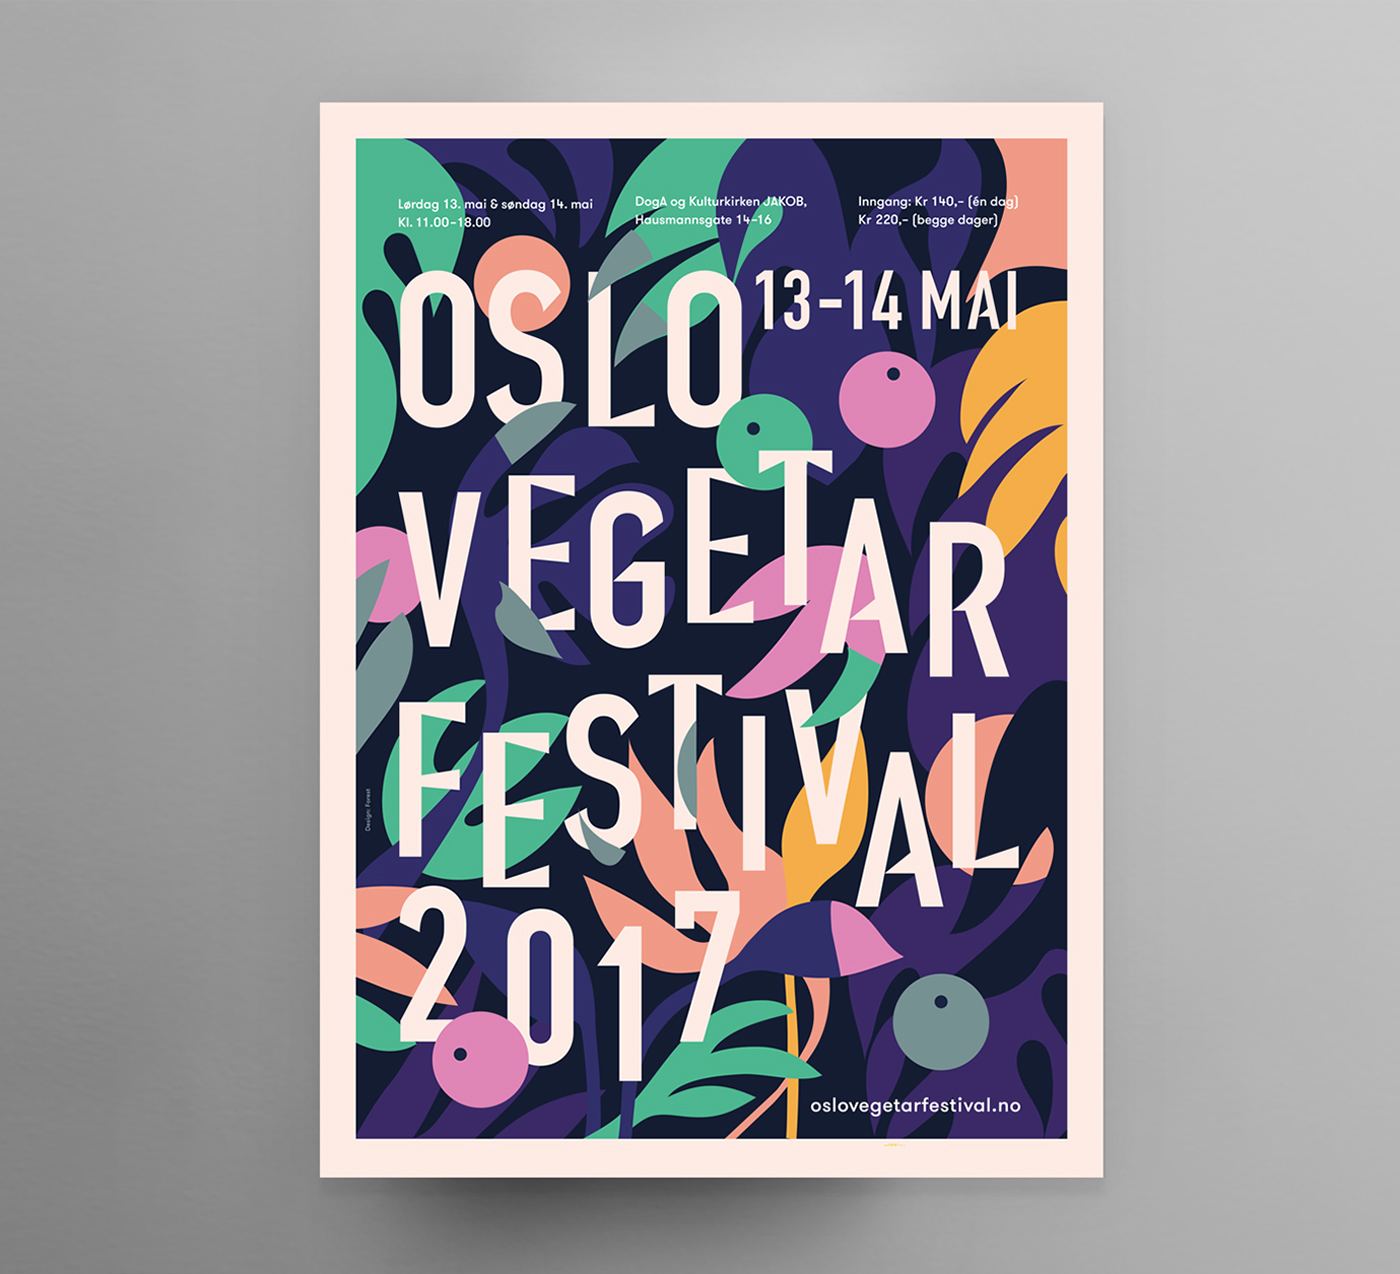 vegan festival Vegetarian Food  oslo poster